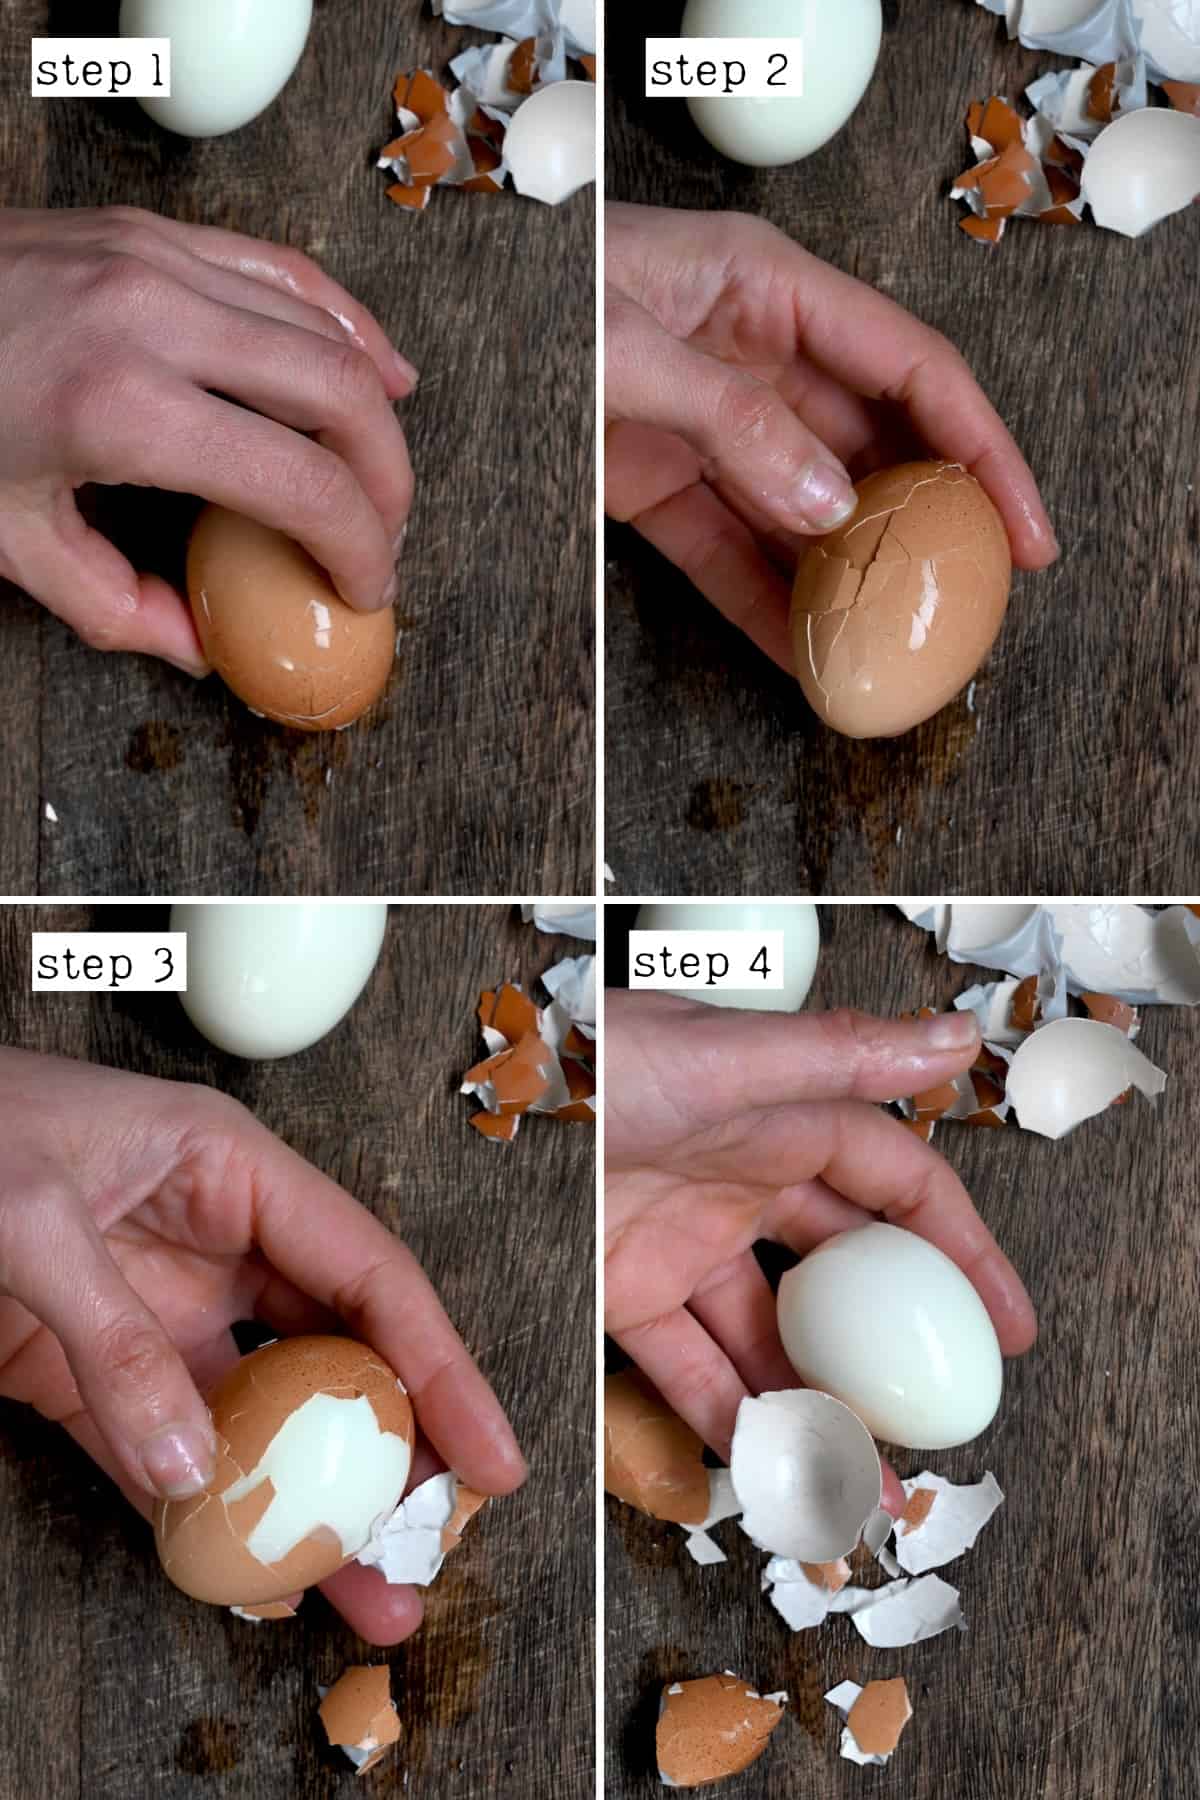 Steps for peeling eggs